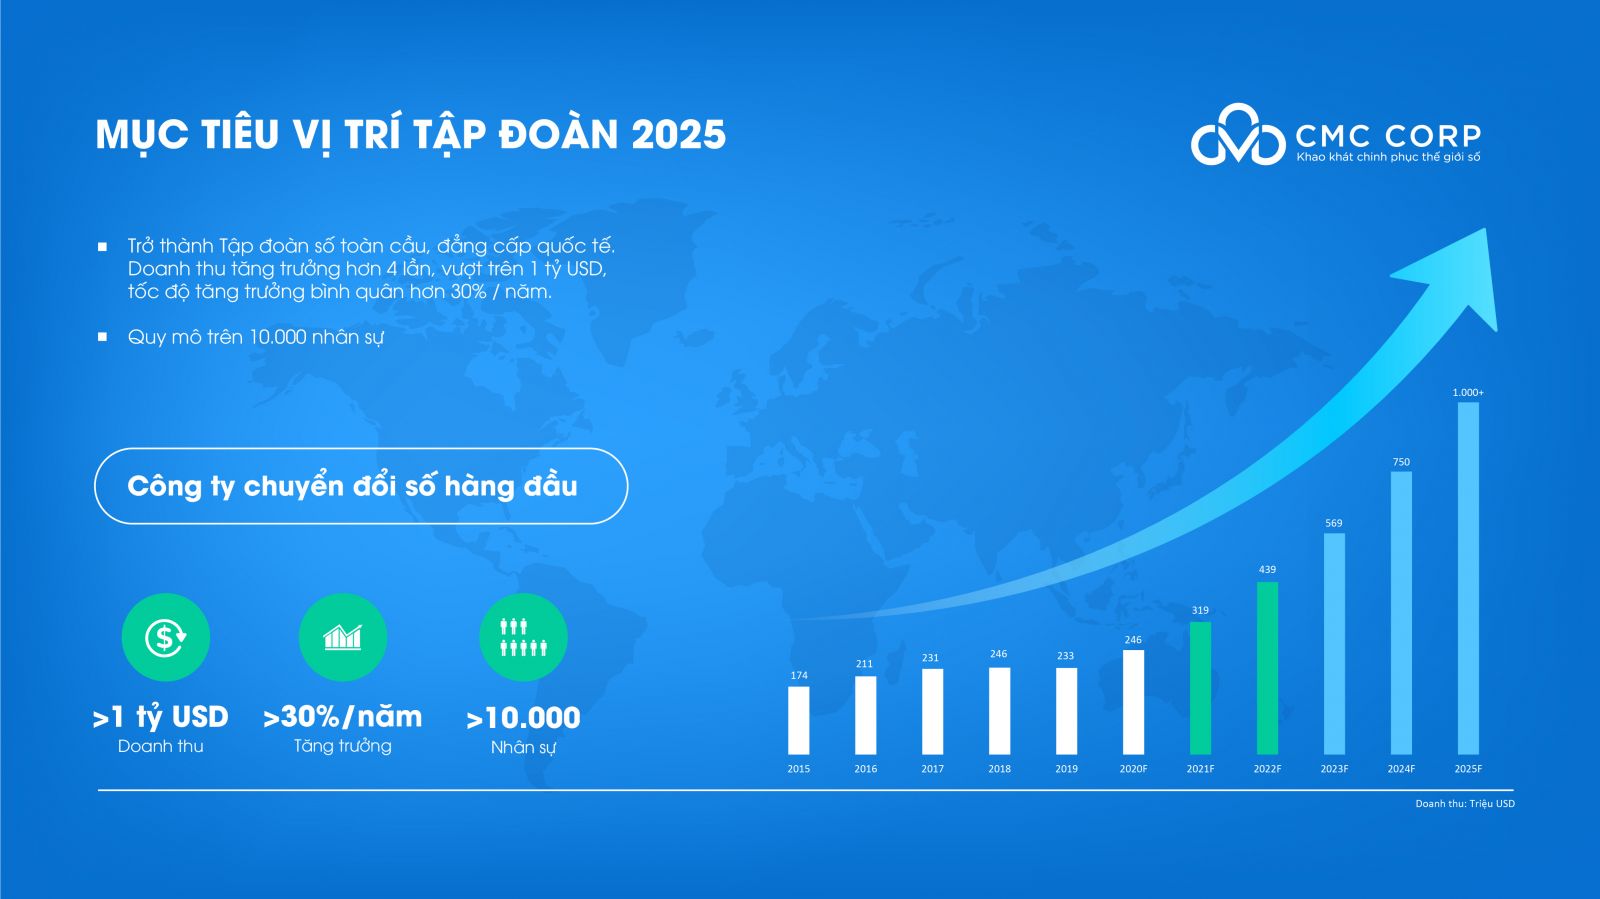 Mục tiêu chiến lược của Tập đoàn Công nghệ CMC đến năm 2025